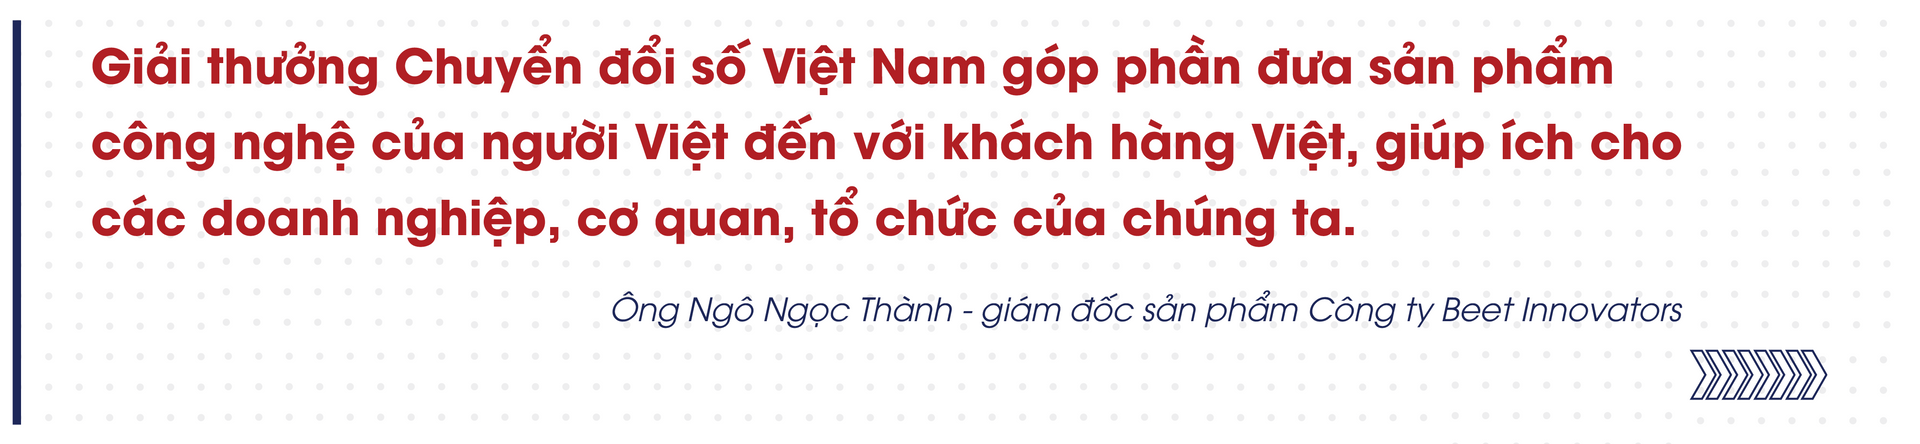 Giải thưởng chuyển đổi số Việt Nam - Cổ vũ tinh thần truyển đổi số quốc gia - Ảnh 8.